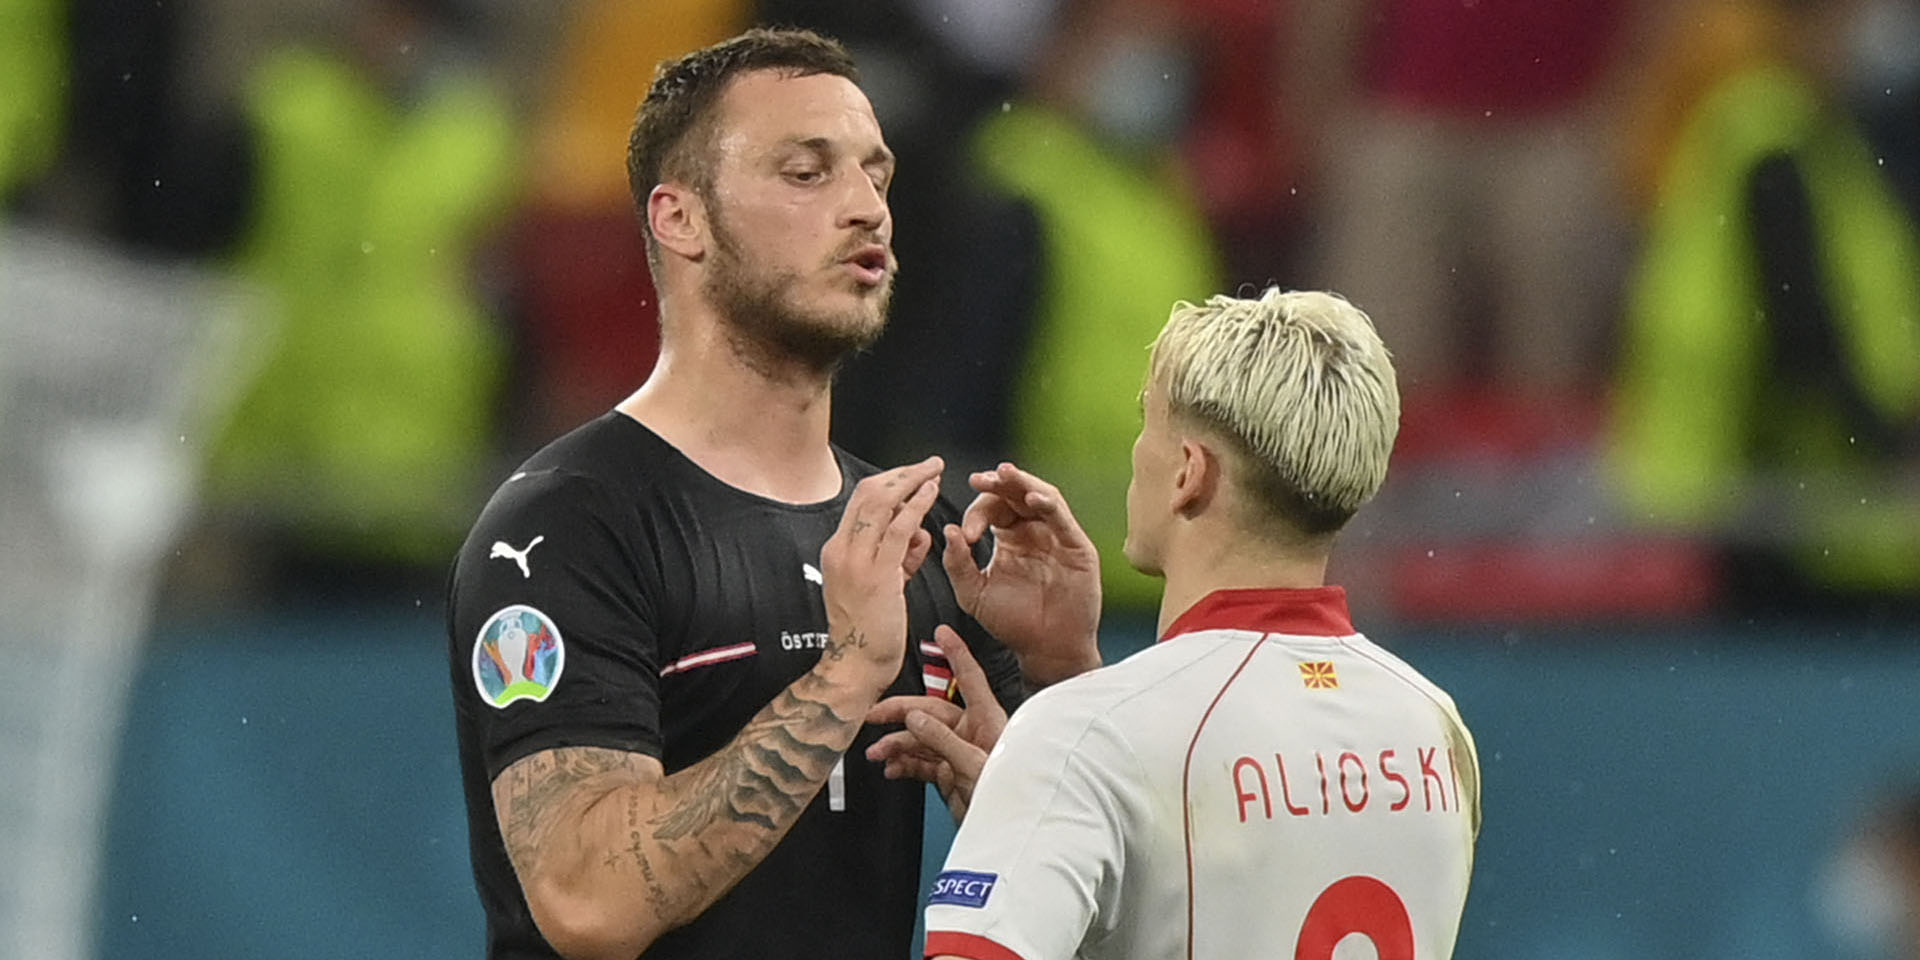 Észak-Macedónok azt kérik az UEFA-tól, büntessék meg az albánozó szerb származású osztrák válogatottat